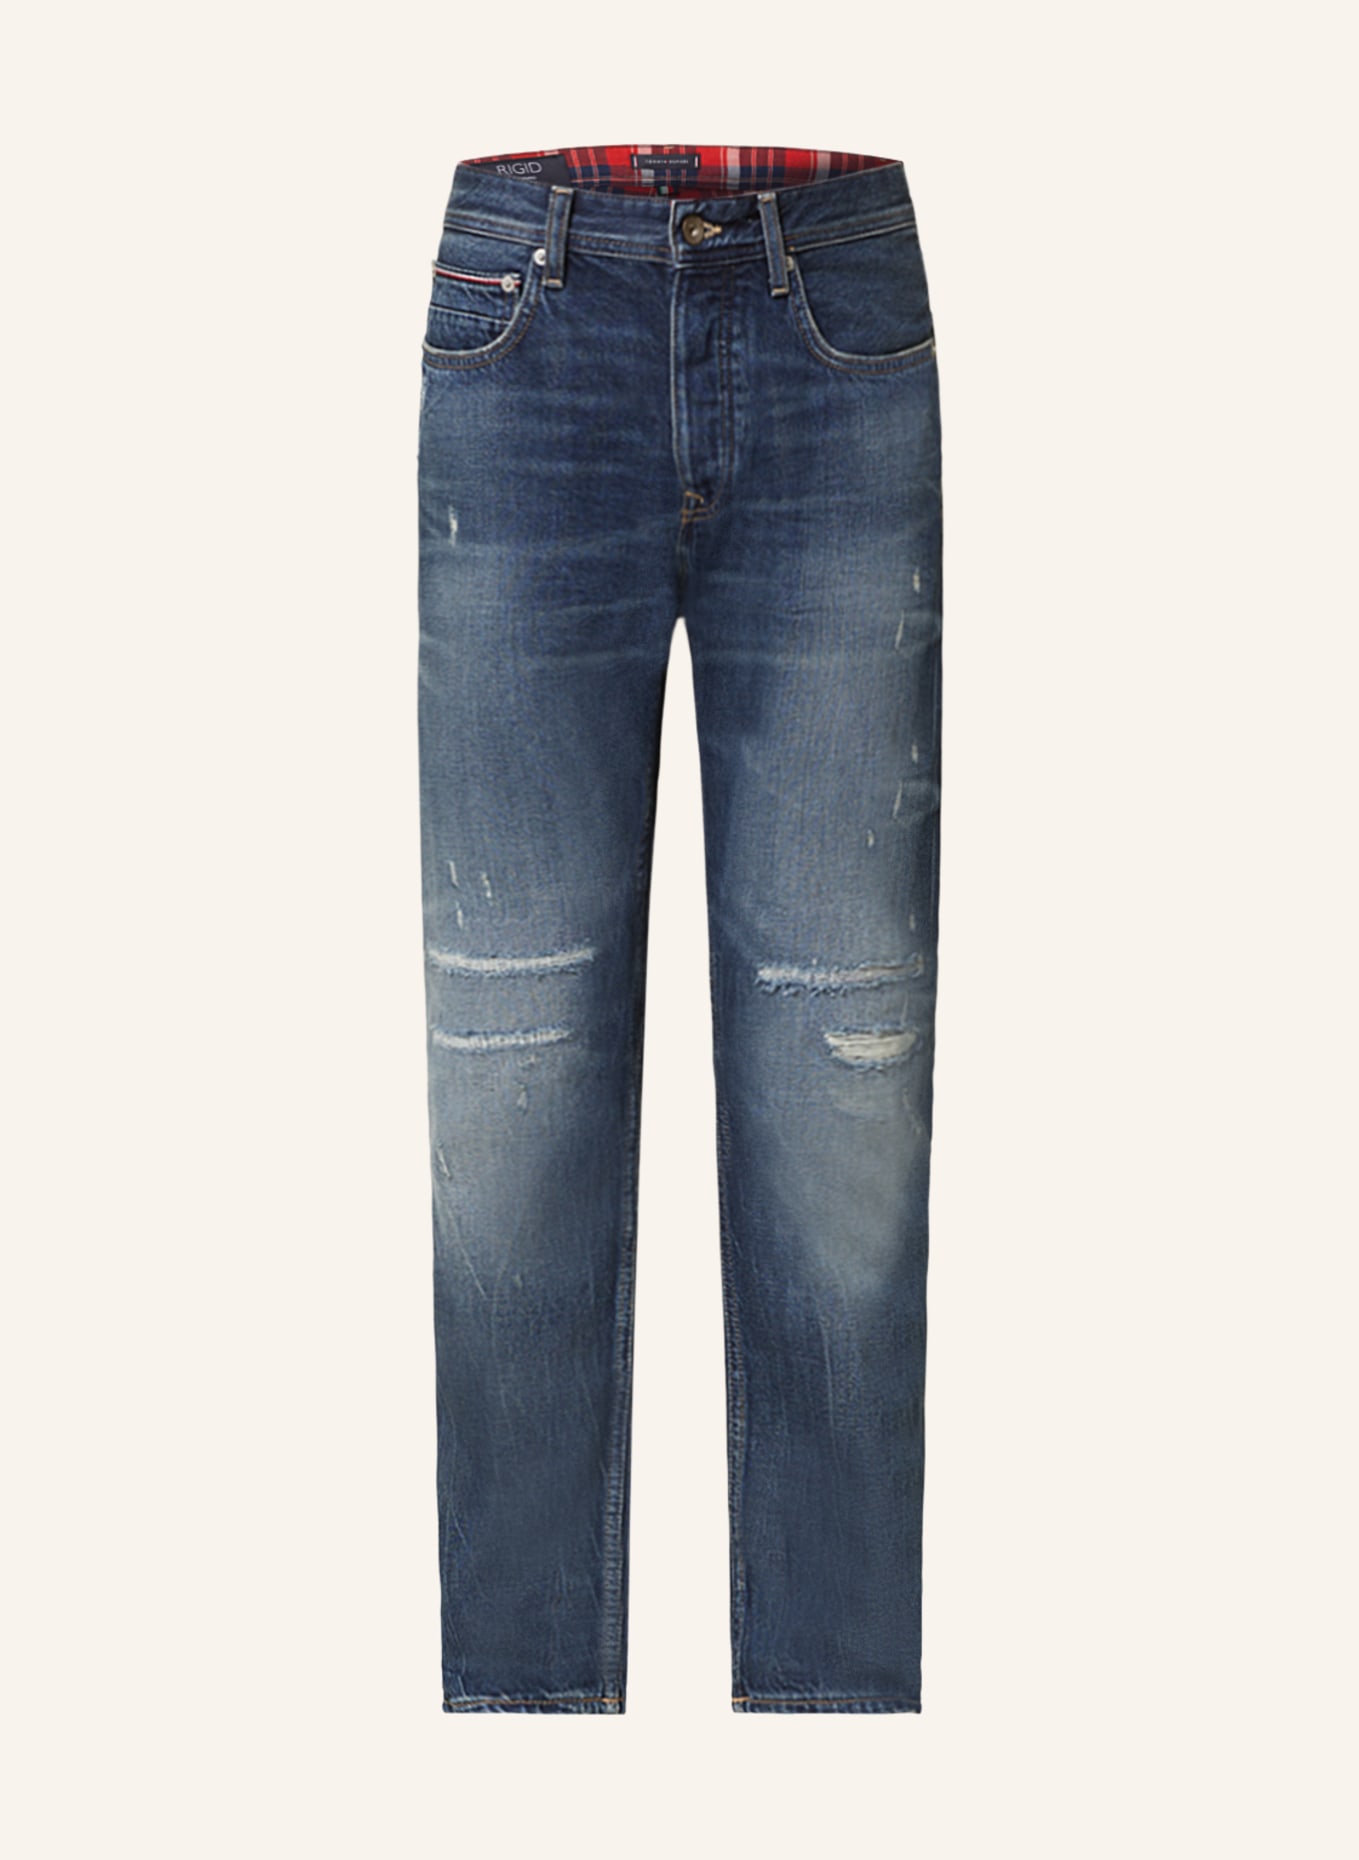 TOMMY HILFIGER Destroyed jeans MERCER regular fit, Color: 1BQ Four Years North (Image 1)